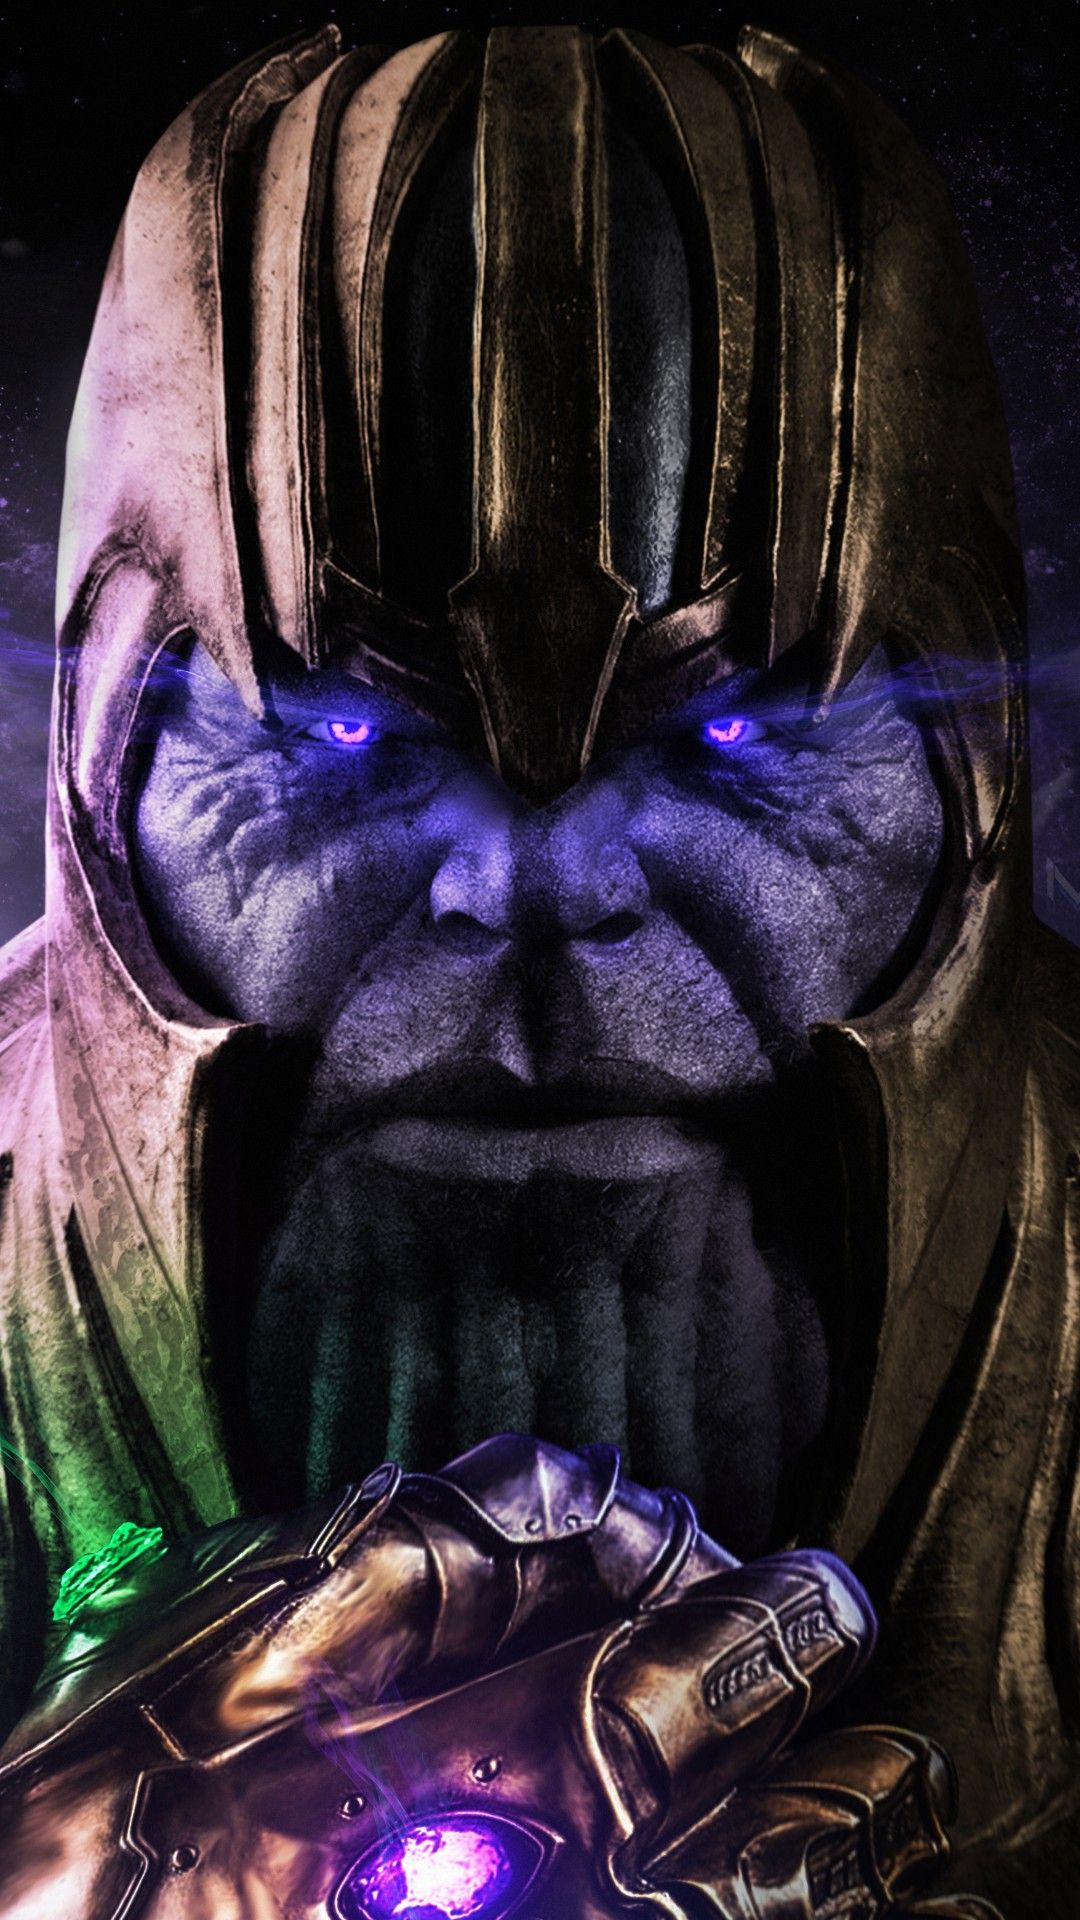 Avengers: Endgame Thanos Weapon 4K Wallpaper #137, 52% OFF